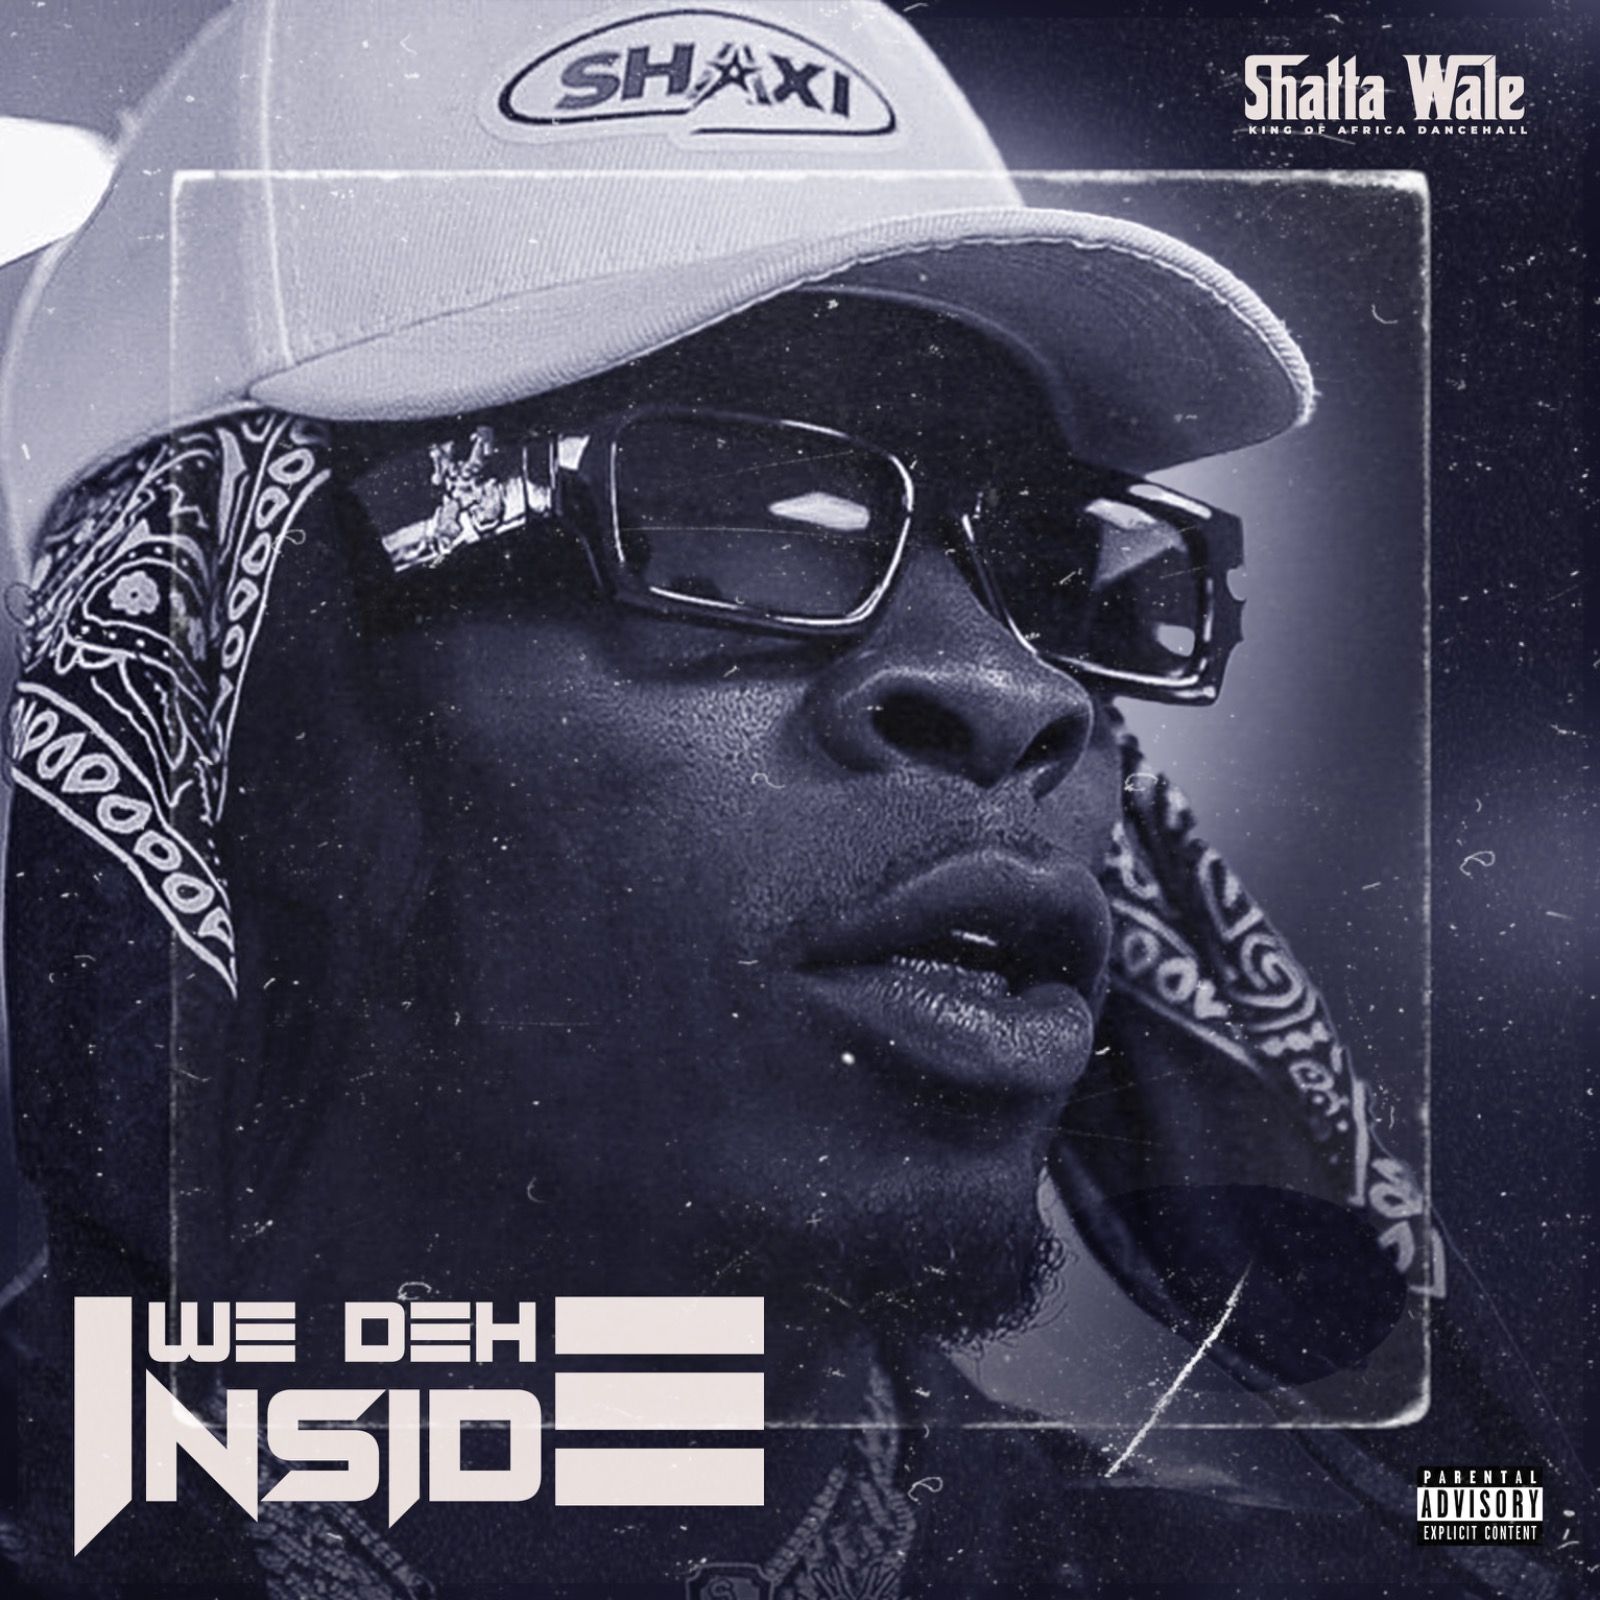 SHATTA WALE - We deh inside